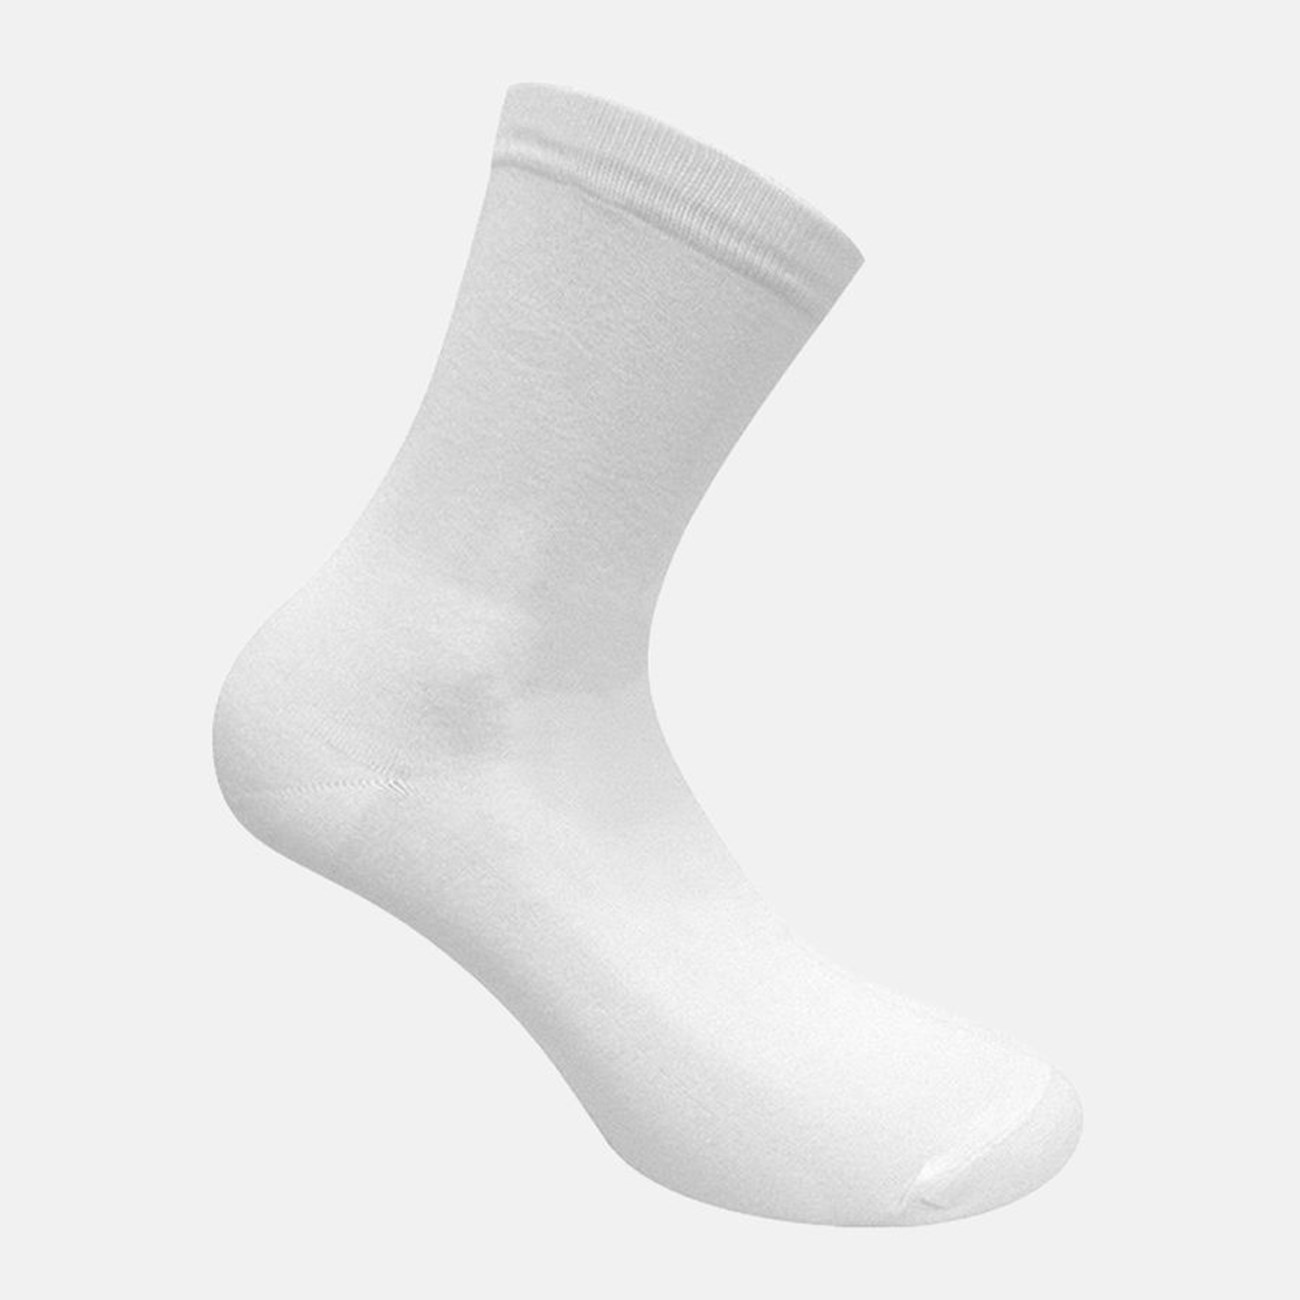   Γυναικείες Κάλτσες Bamboo W333-01 - The Athlete's Foot